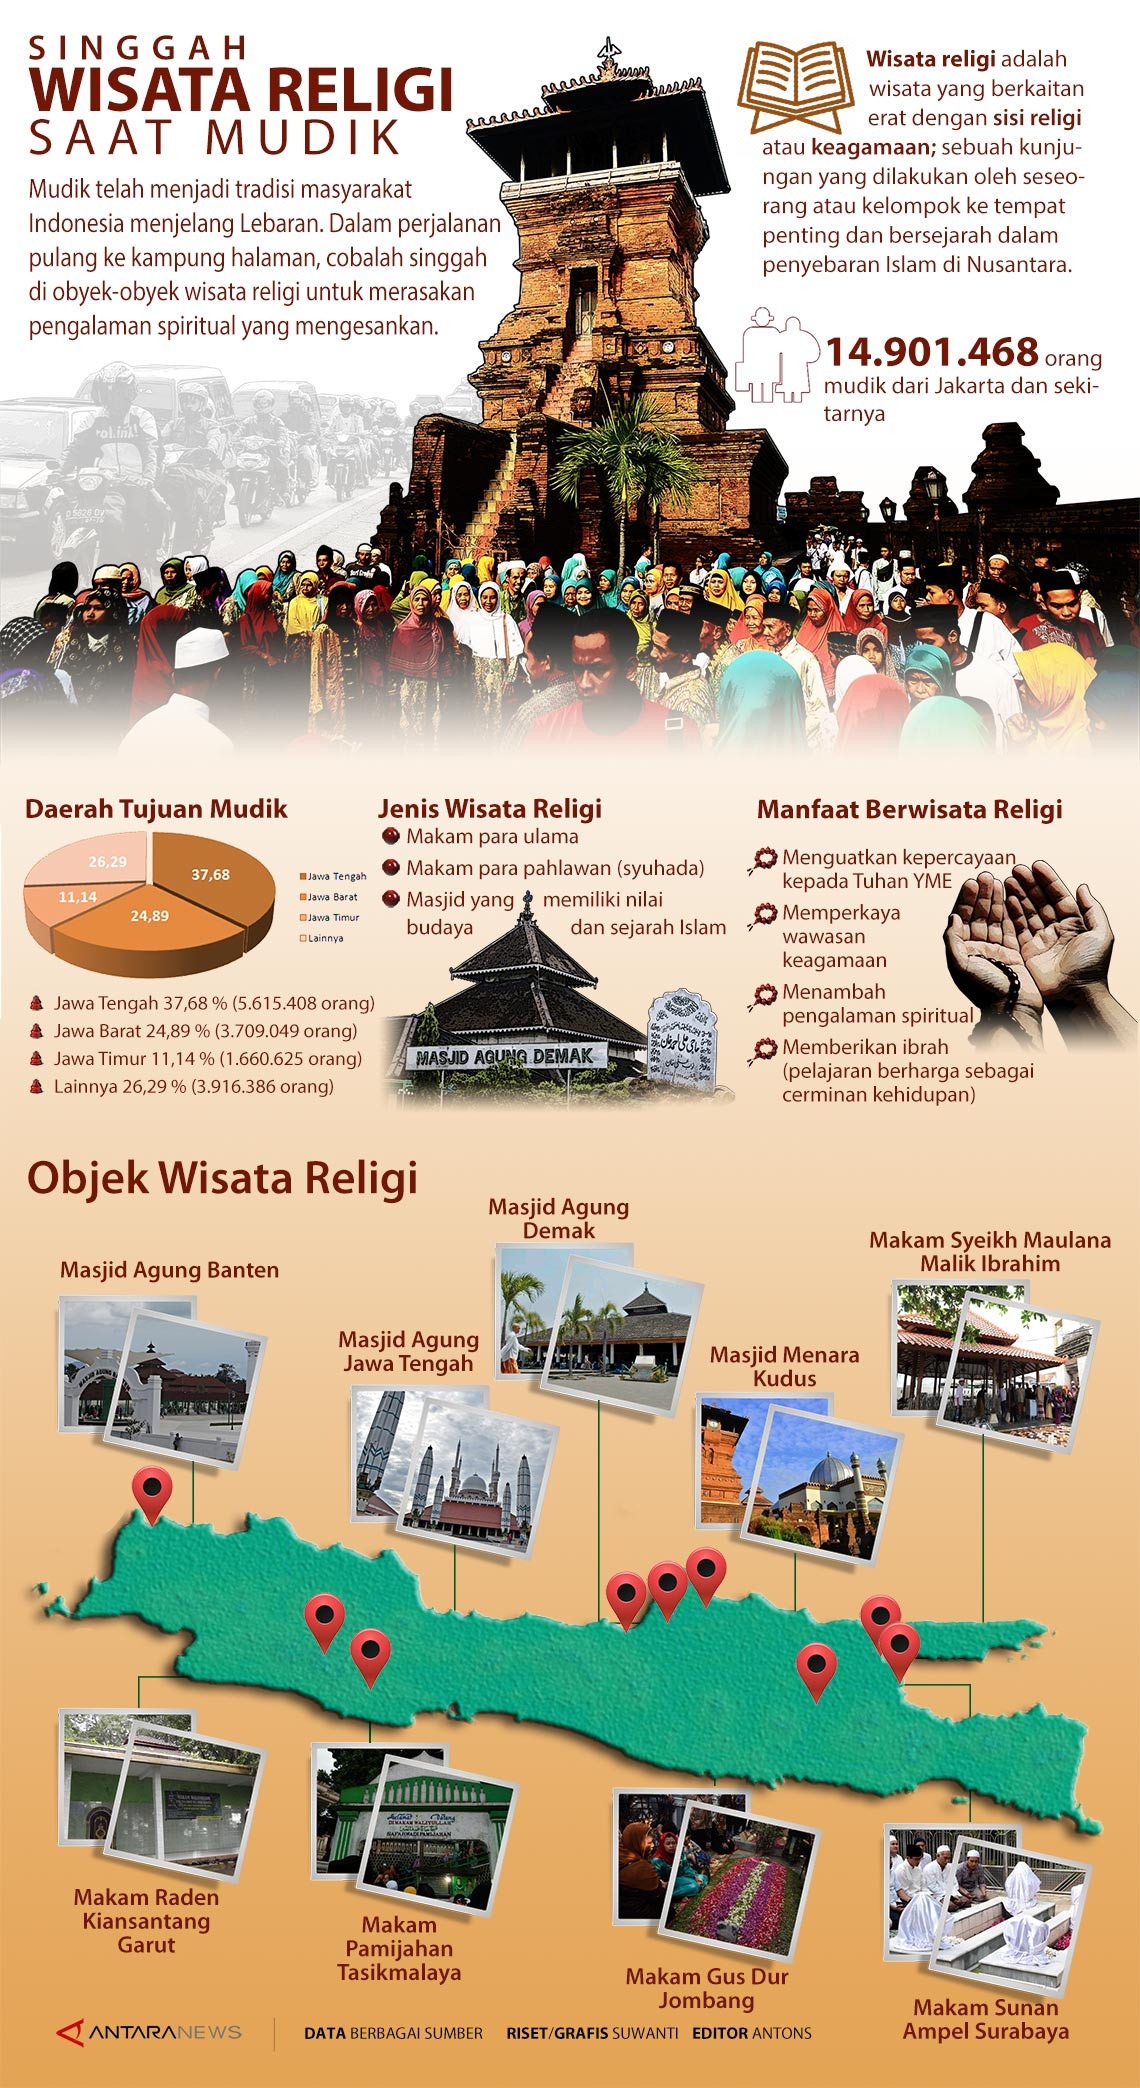 Infografis: Singgah wisata religi saat mudik - ANTARA News